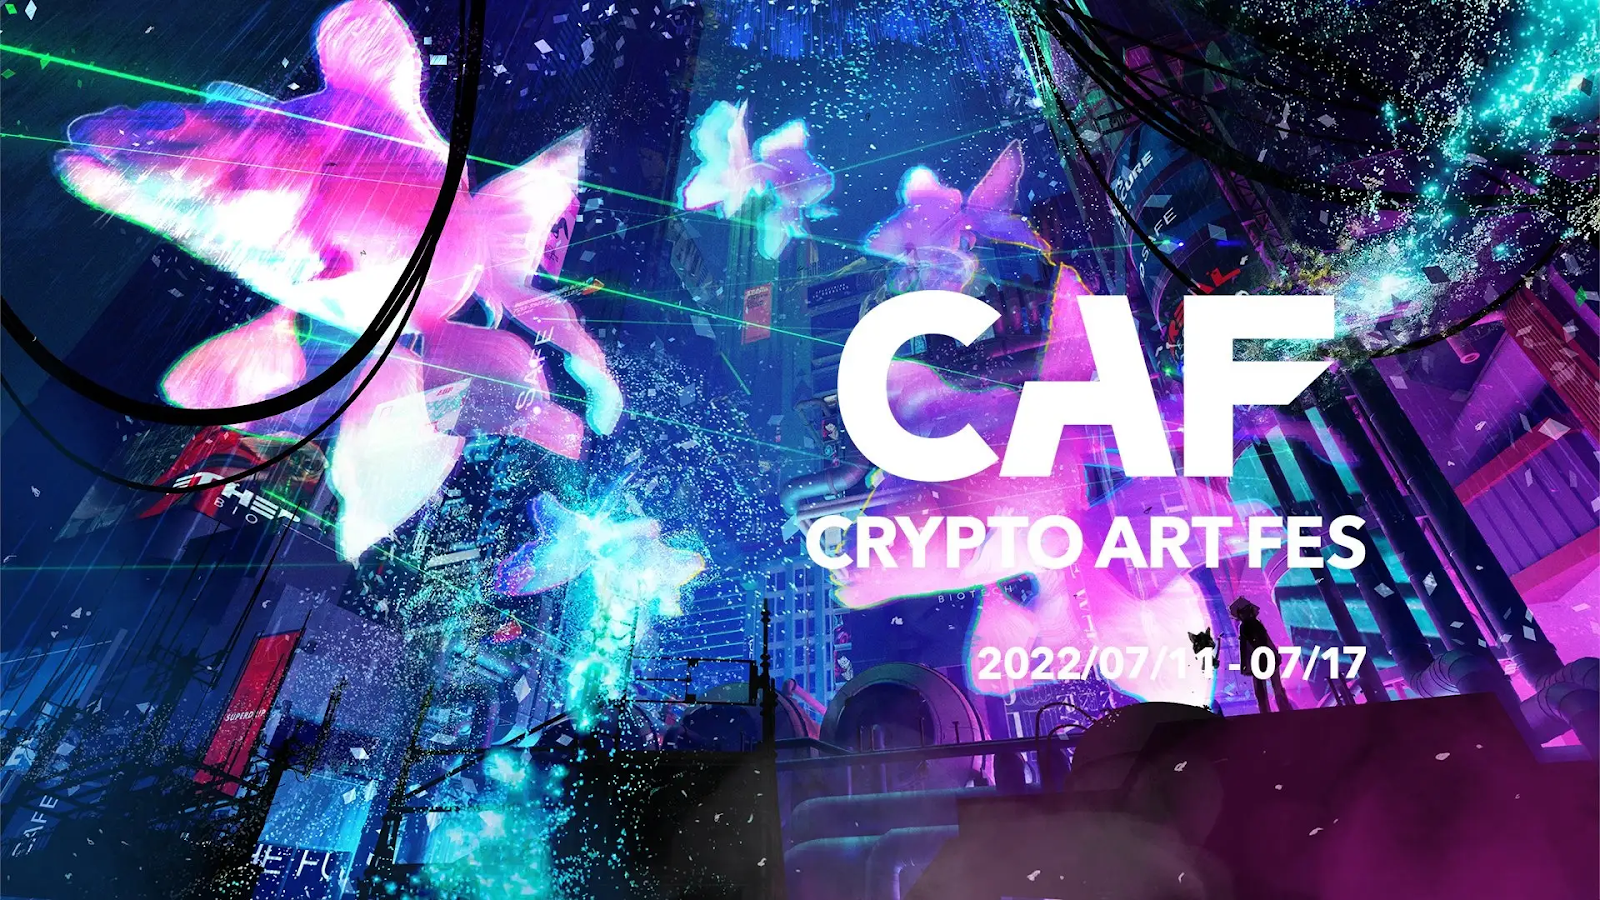 「Crypto Art Fes 2022」の参加アーティストおよびフィジカルイベントの詳細が決定！